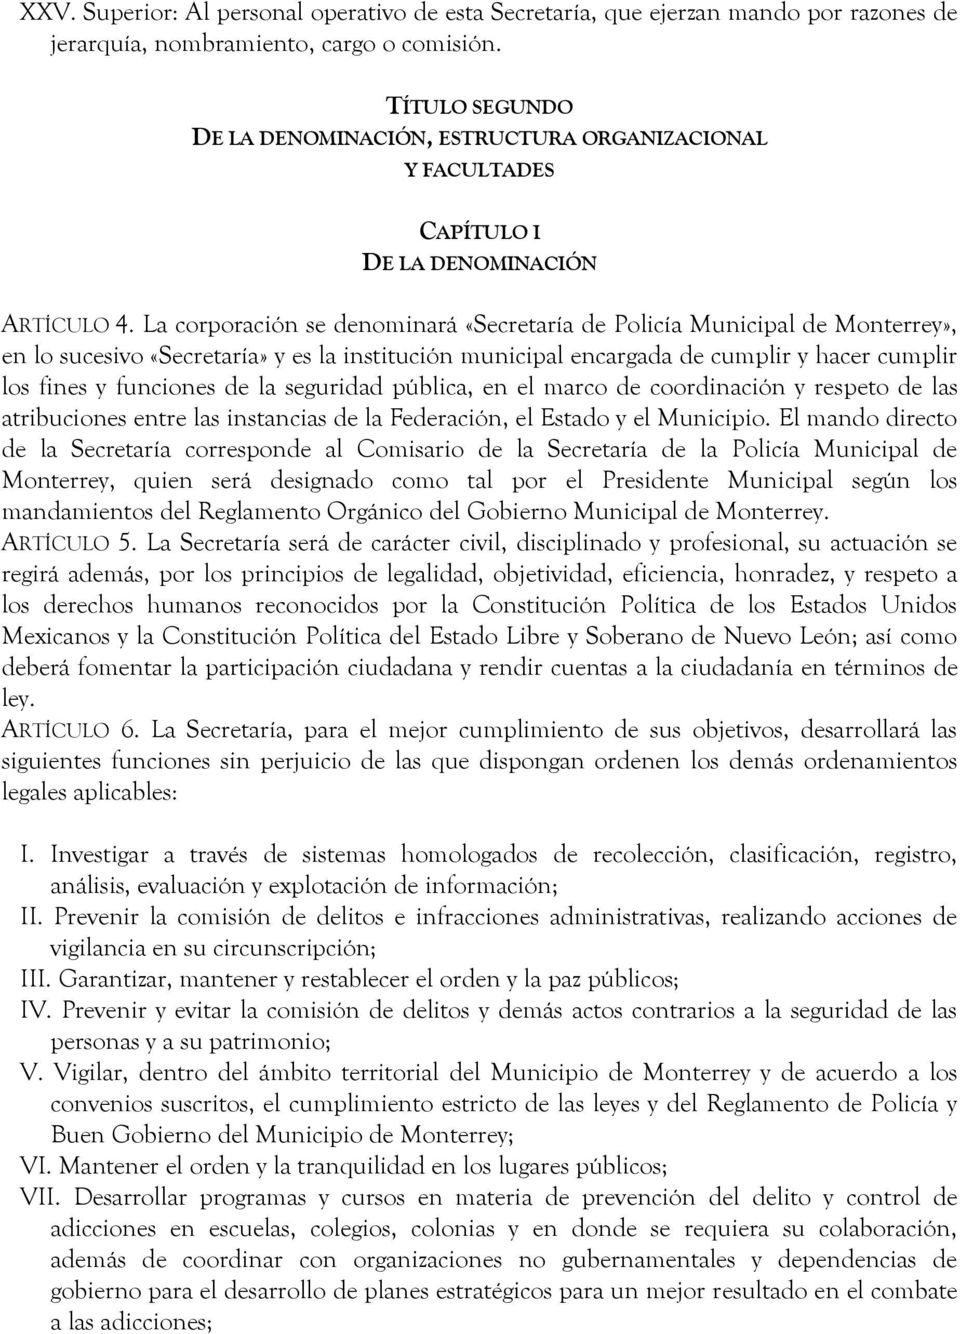 La corporación se denominará «Secretaría de Policía Municipal de Monterrey», en lo sucesivo «Secretaría» y es la institución municipal encargada de cumplir y hacer cumplir los fines y funciones de la